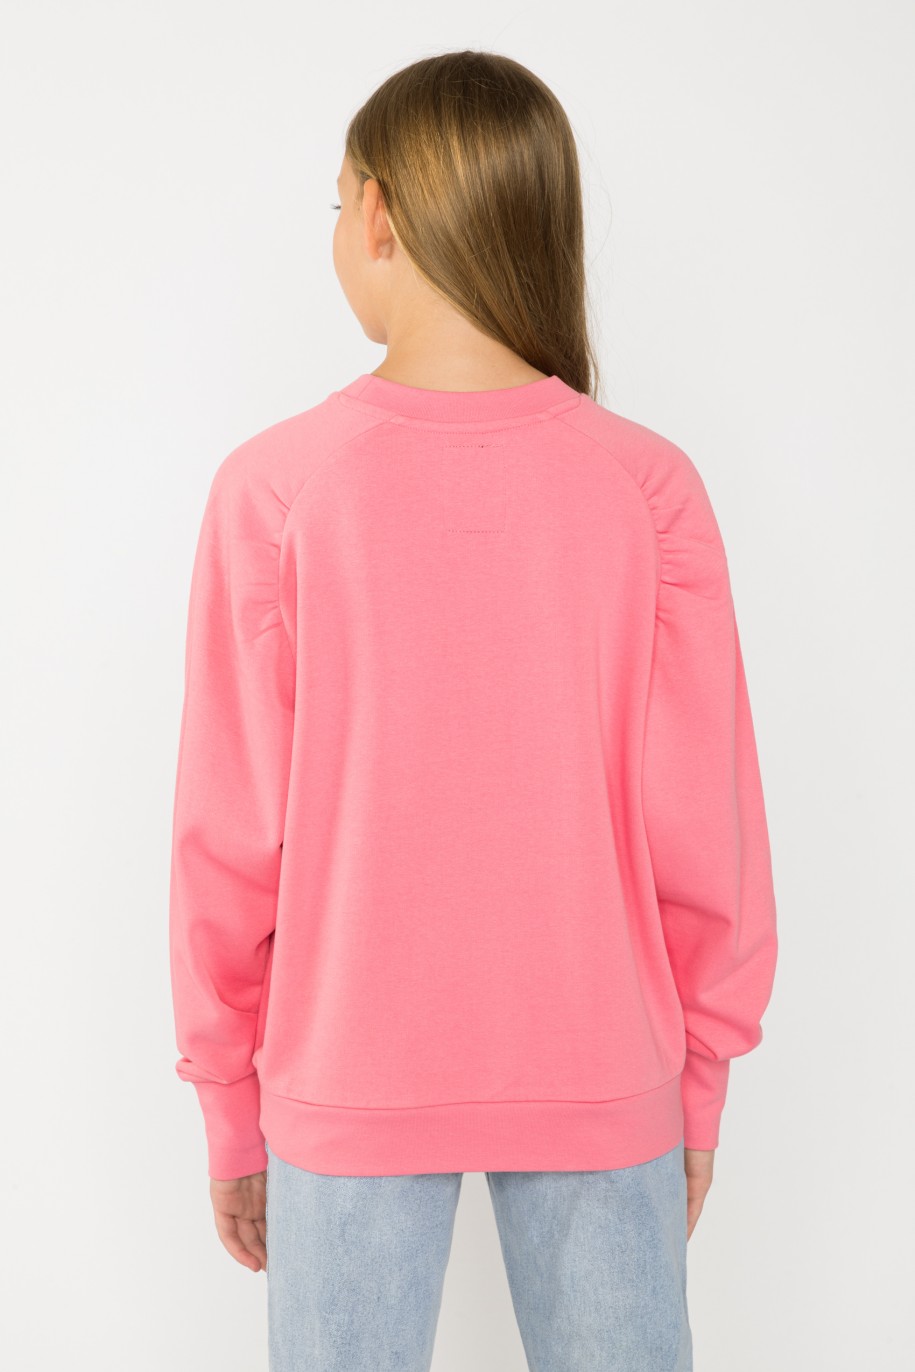 Różowa bluza dla dziewczyny - 33072